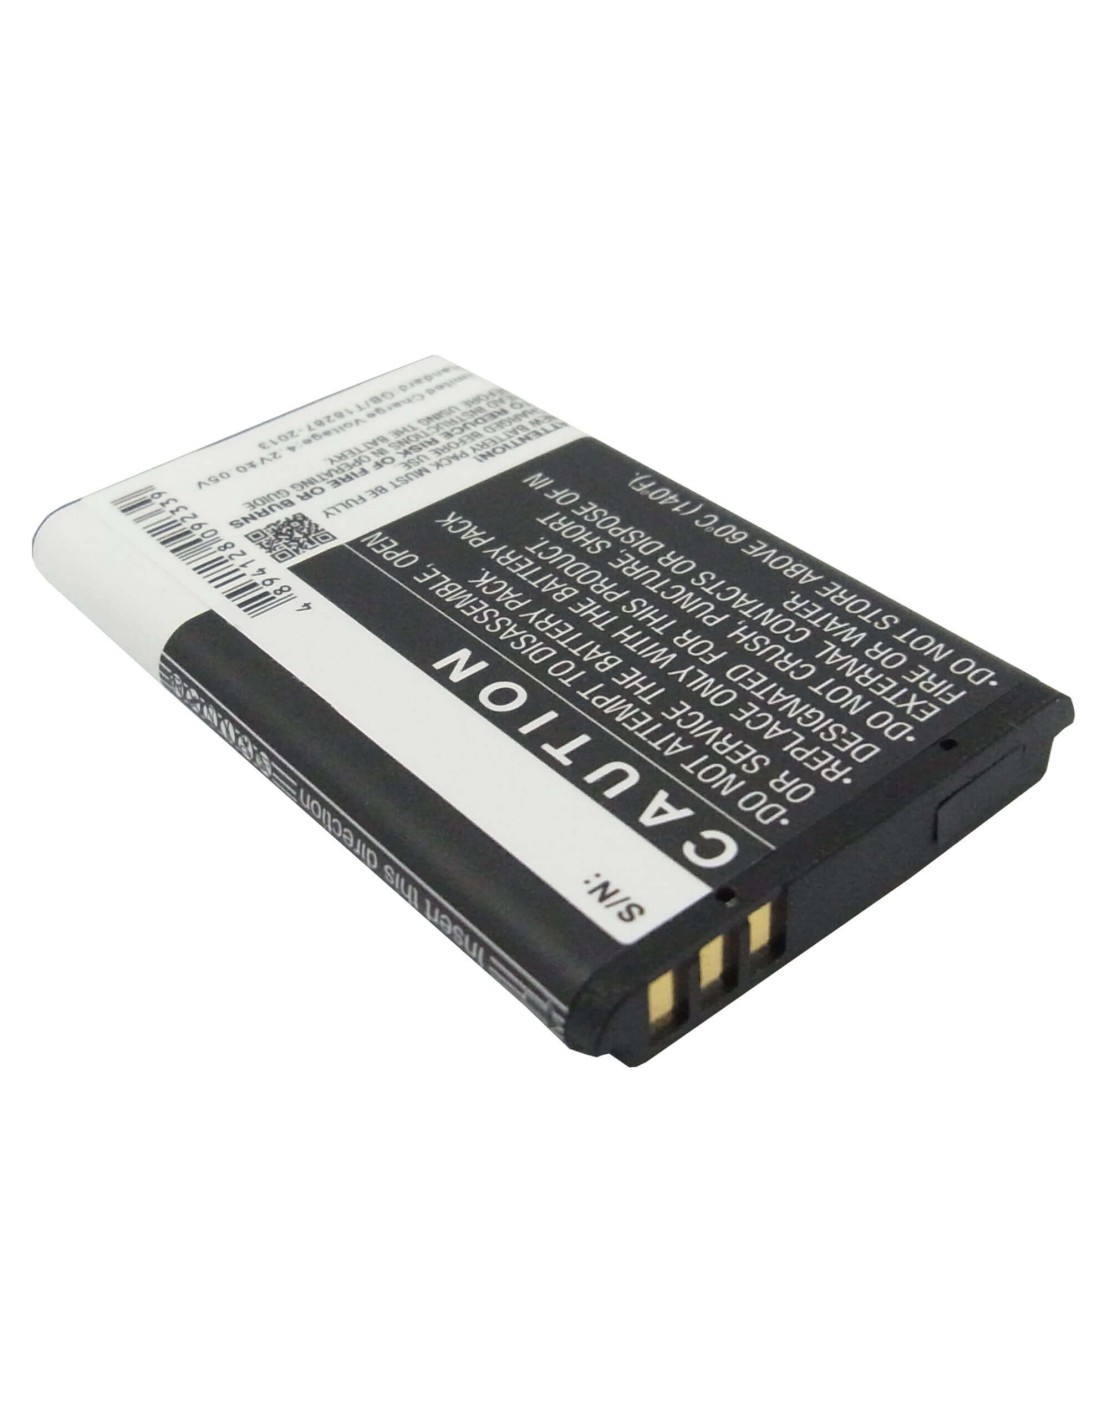 Battery for Telefunken Fhd 170/5 3.7V, 1200mAh - 4.44Wh